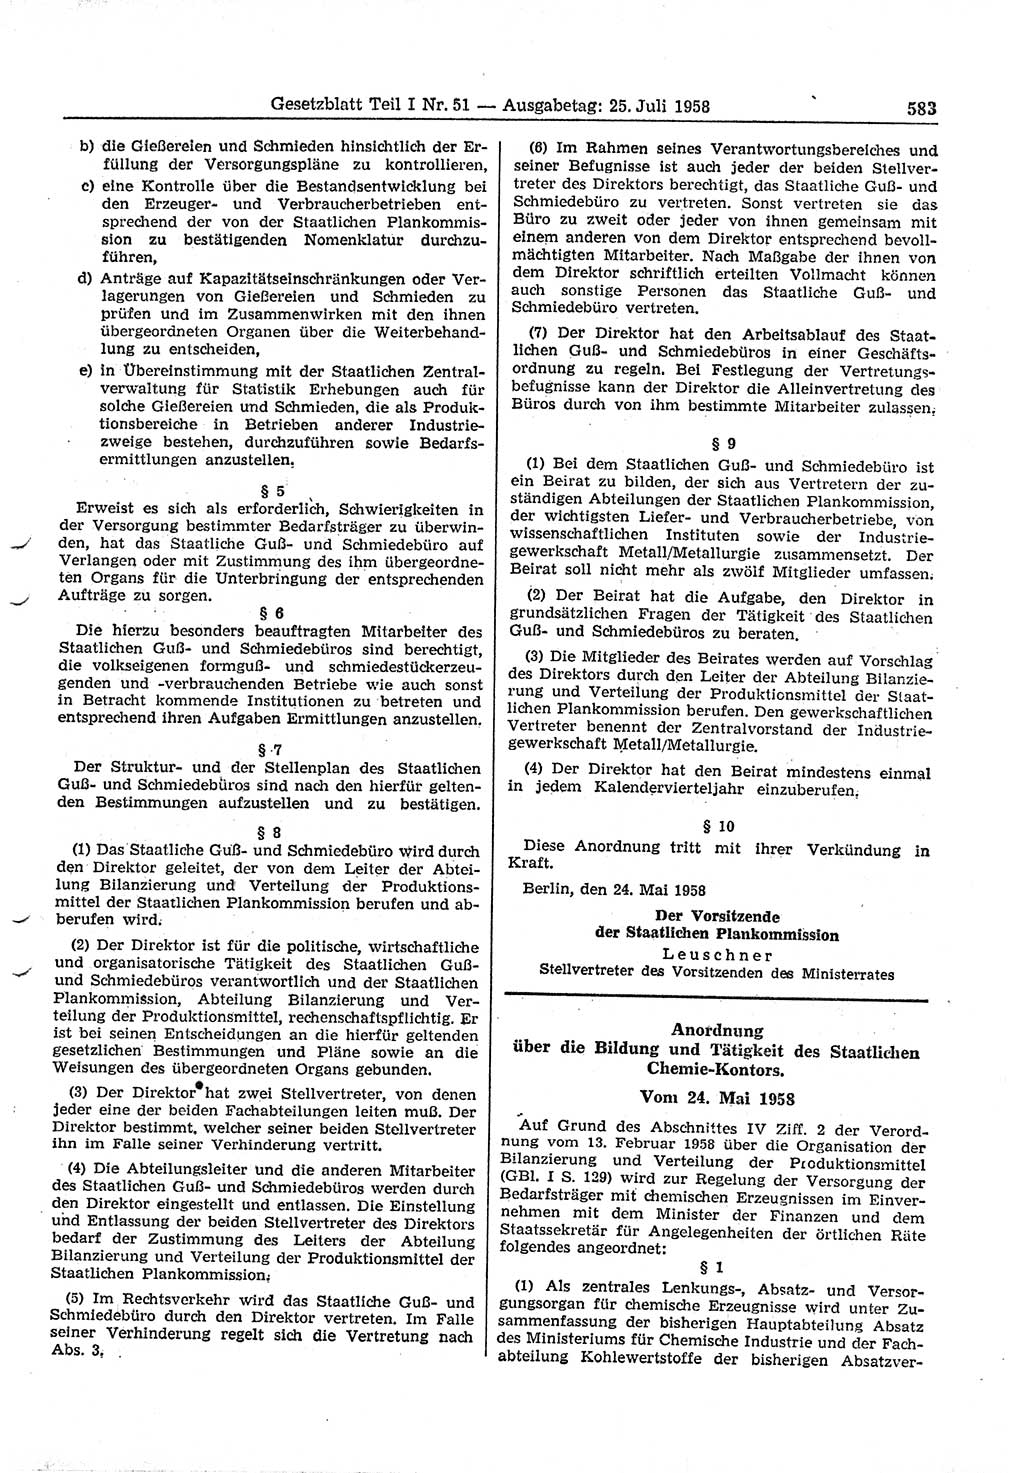 Gesetzblatt (GBl.) der Deutschen Demokratischen Republik (DDR) Teil Ⅰ 1958, Seite 583 (GBl. DDR Ⅰ 1958, S. 583)